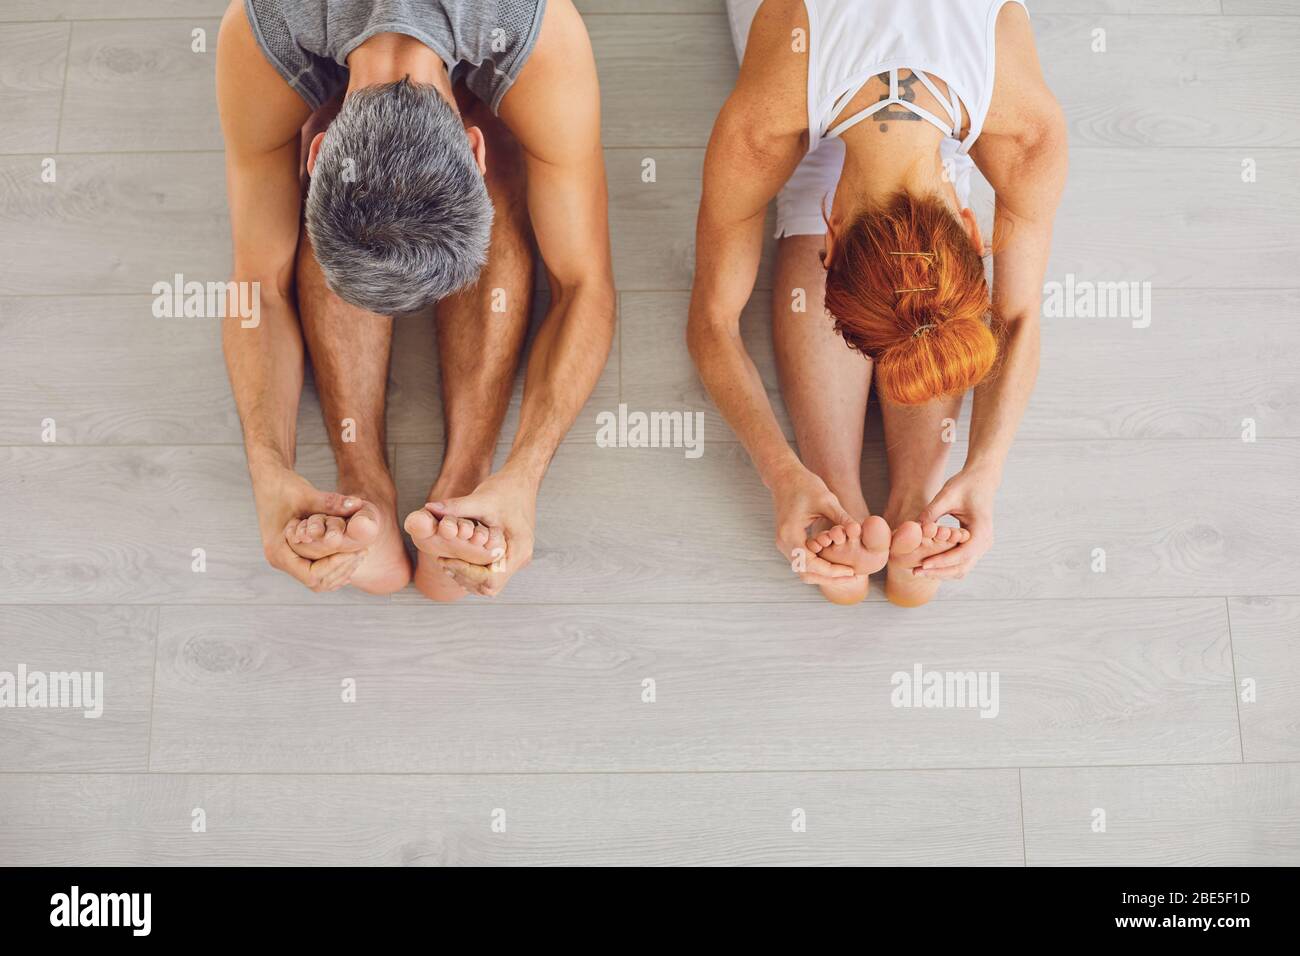 Aktives Paar, das gemeinsam Yoga praktiziert Stockfoto